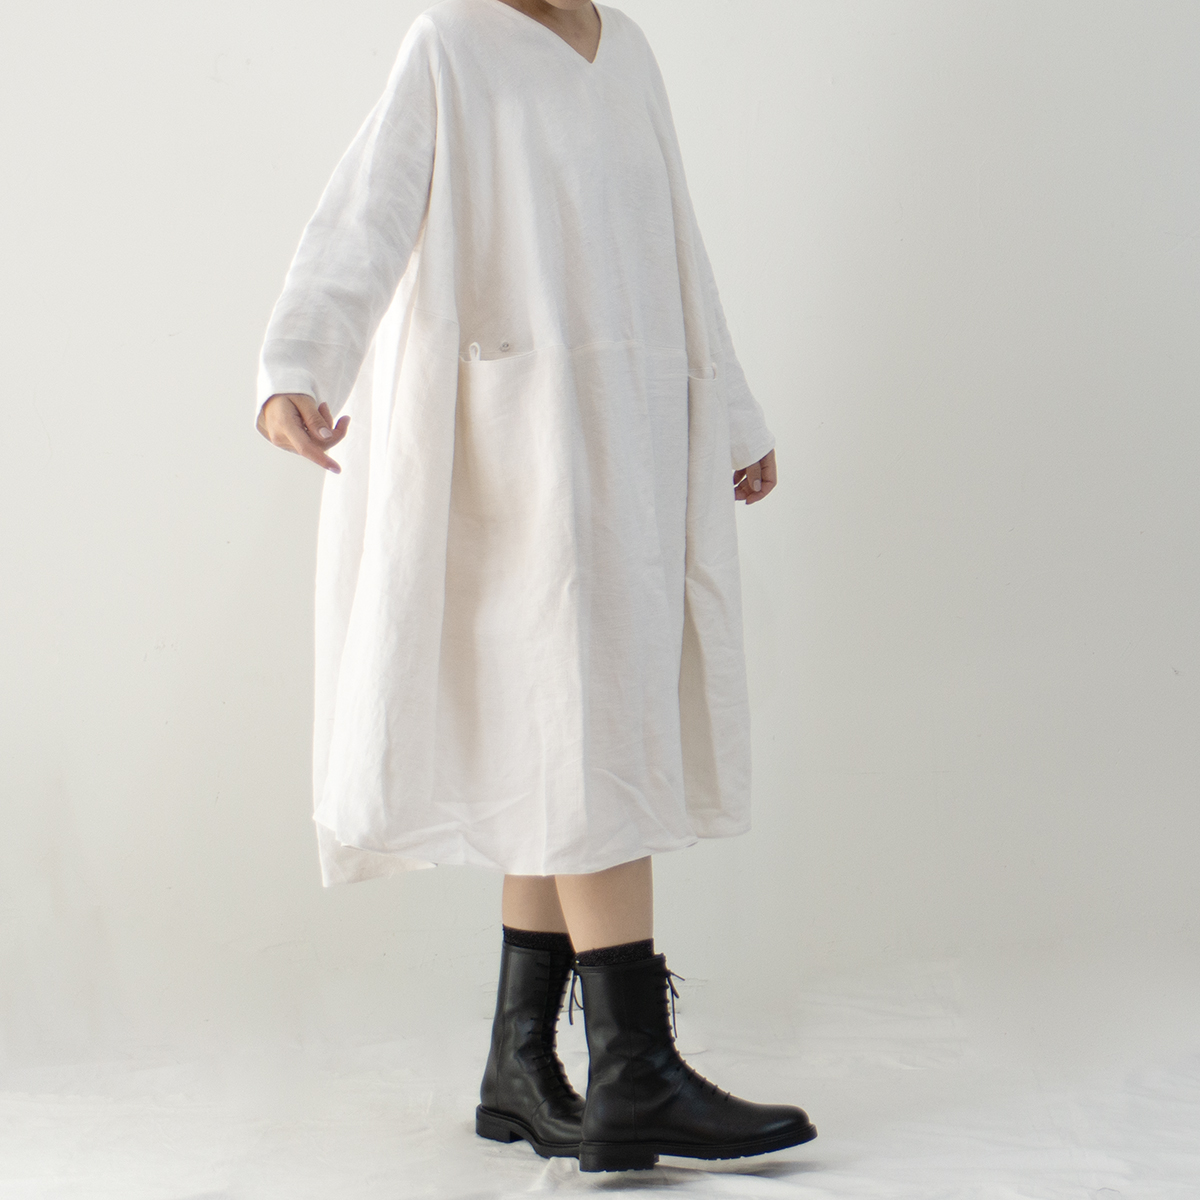 Whiteread Dress Vintage linen